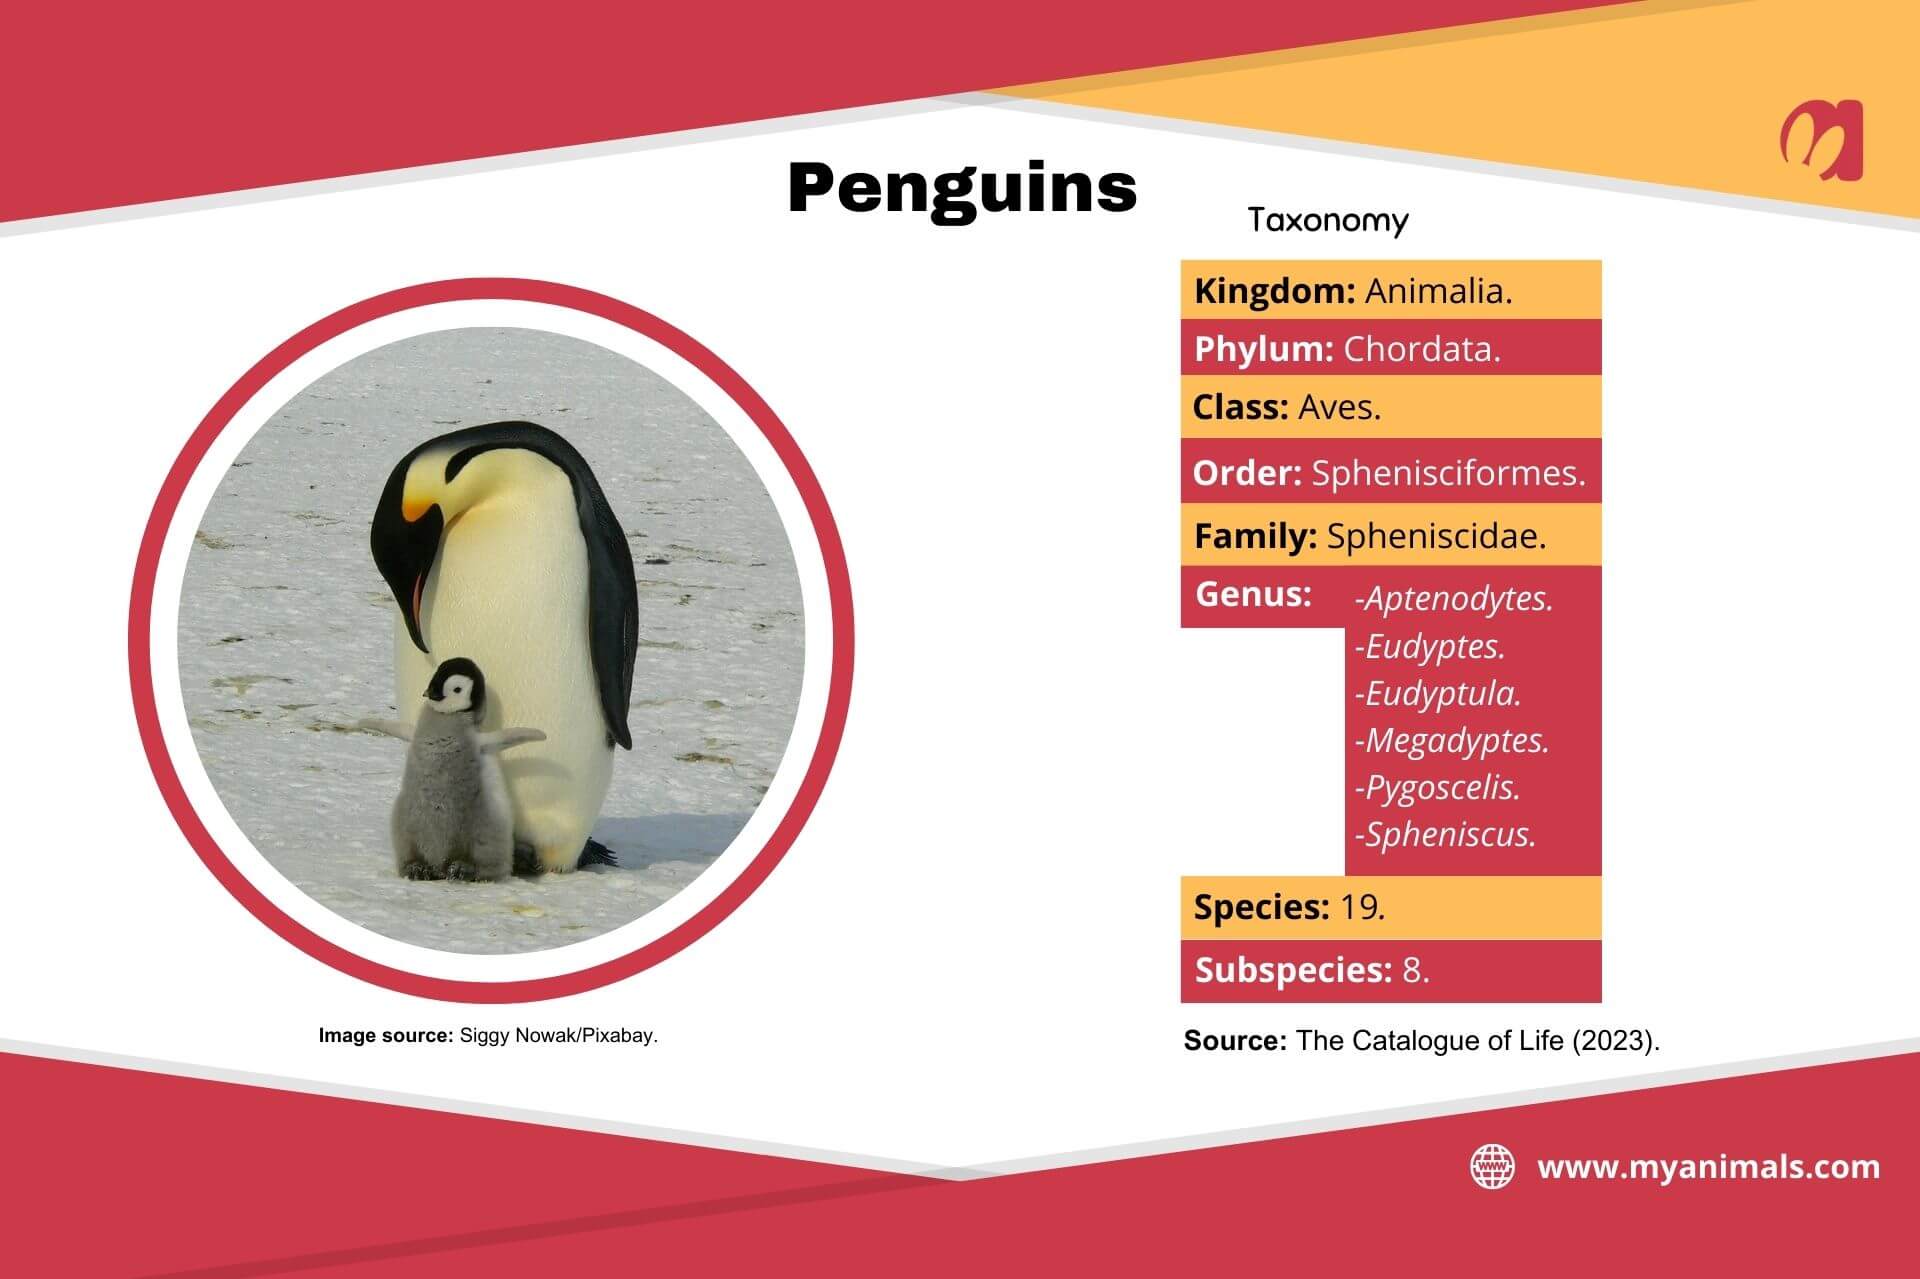 Information on penguins.